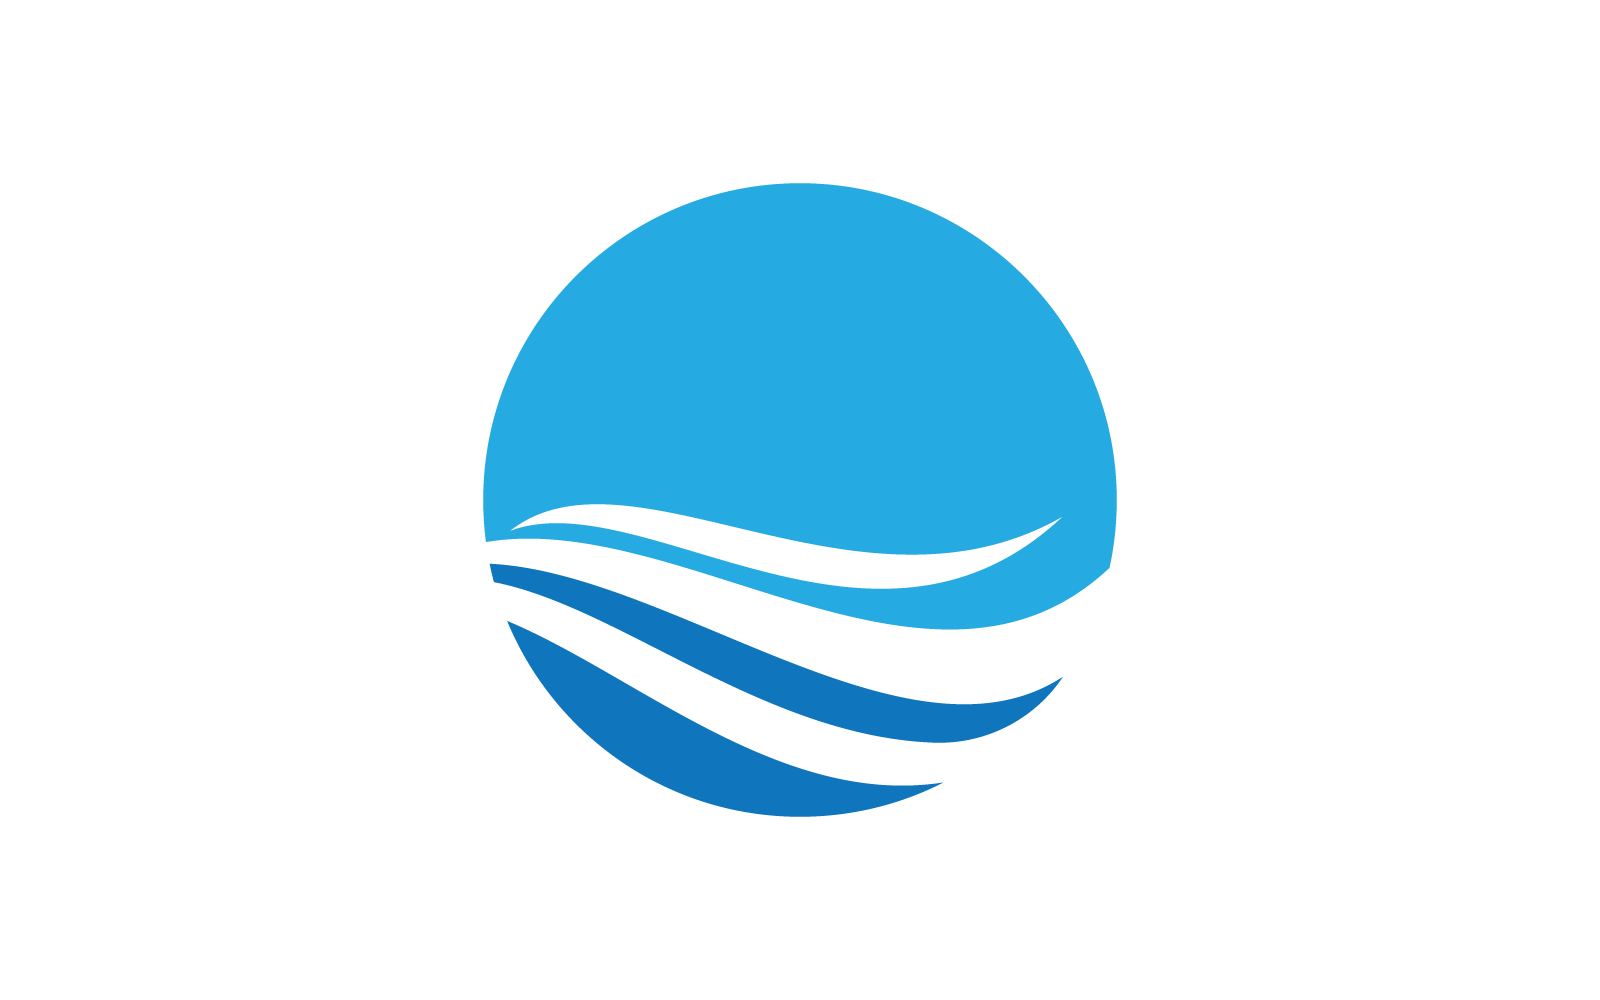 Water Wave illustration logo design  vector